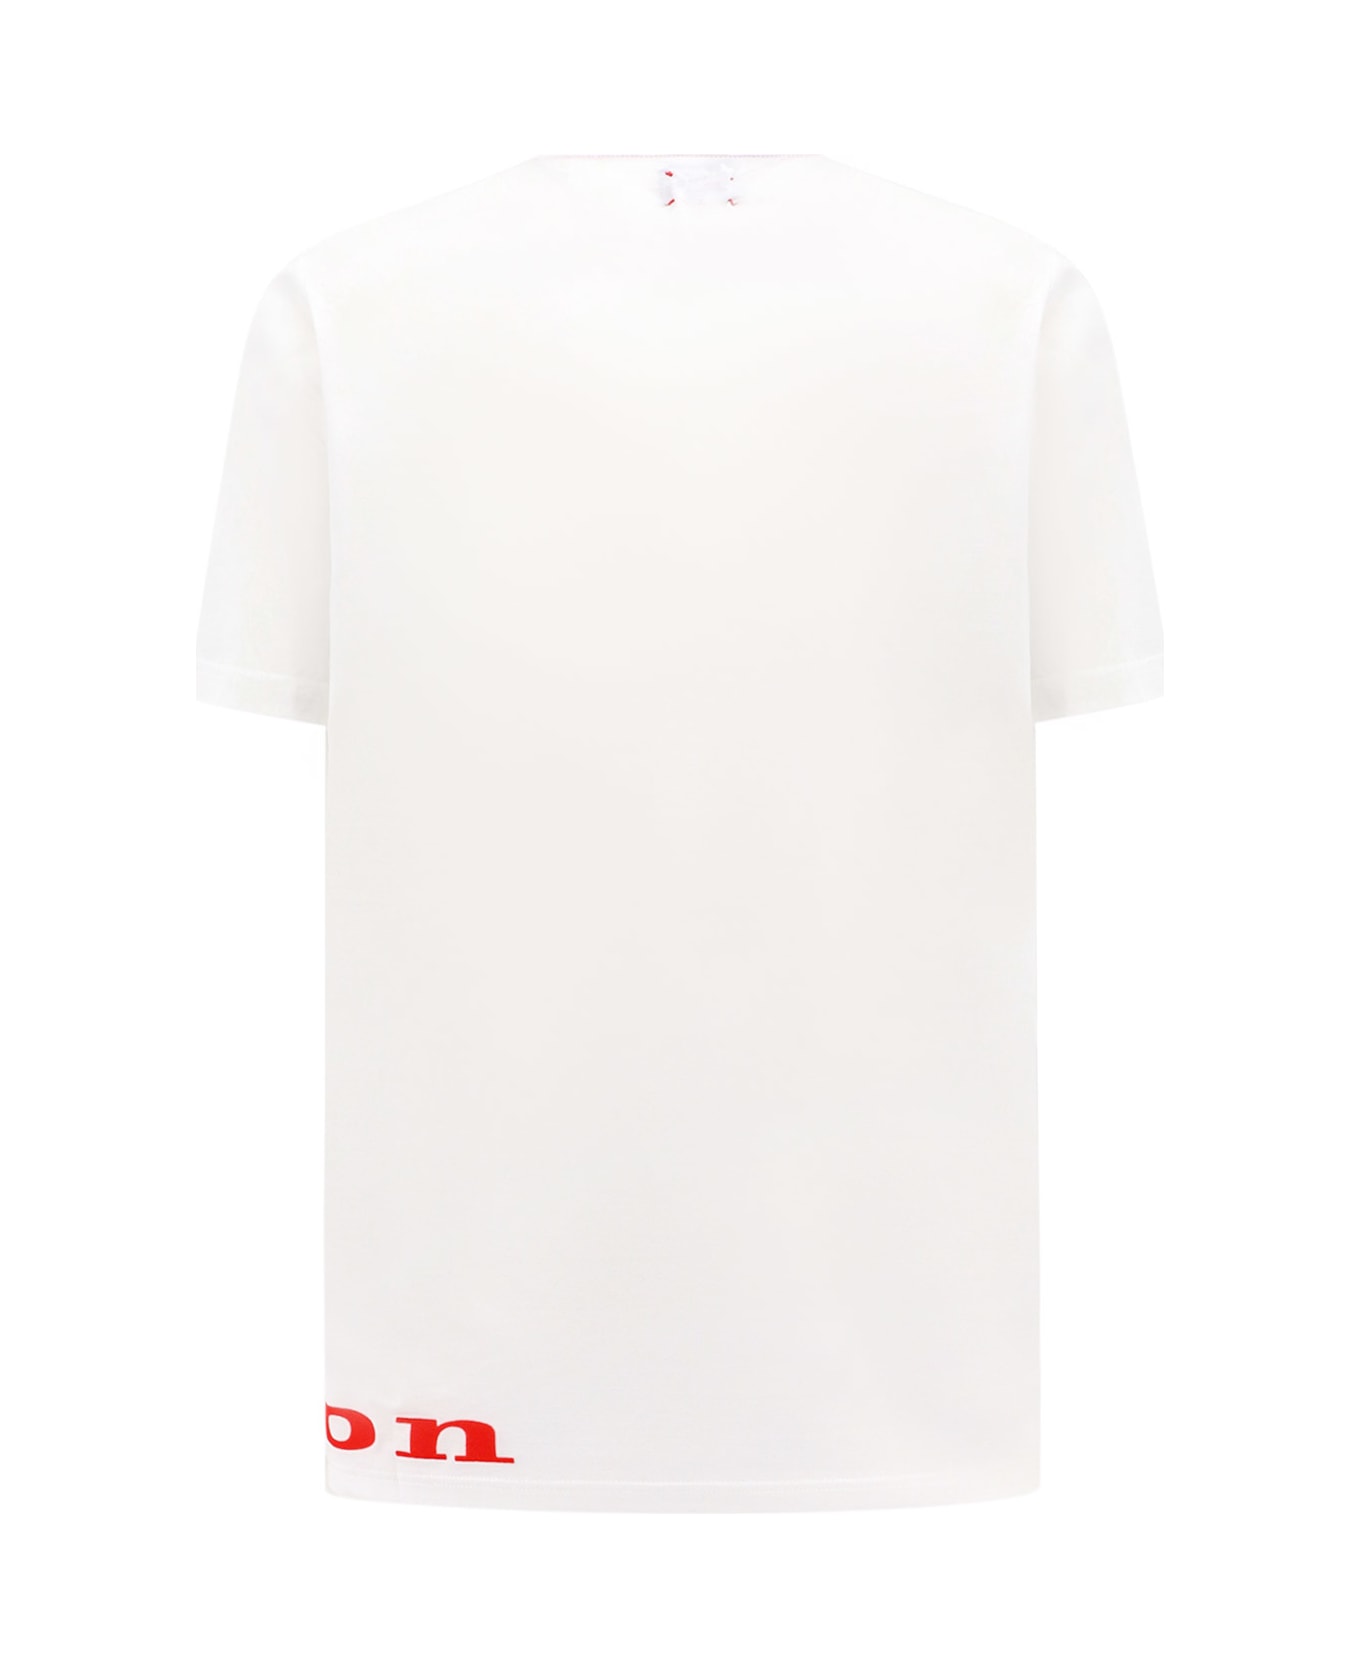 Kiton T-shirt - White シャツ